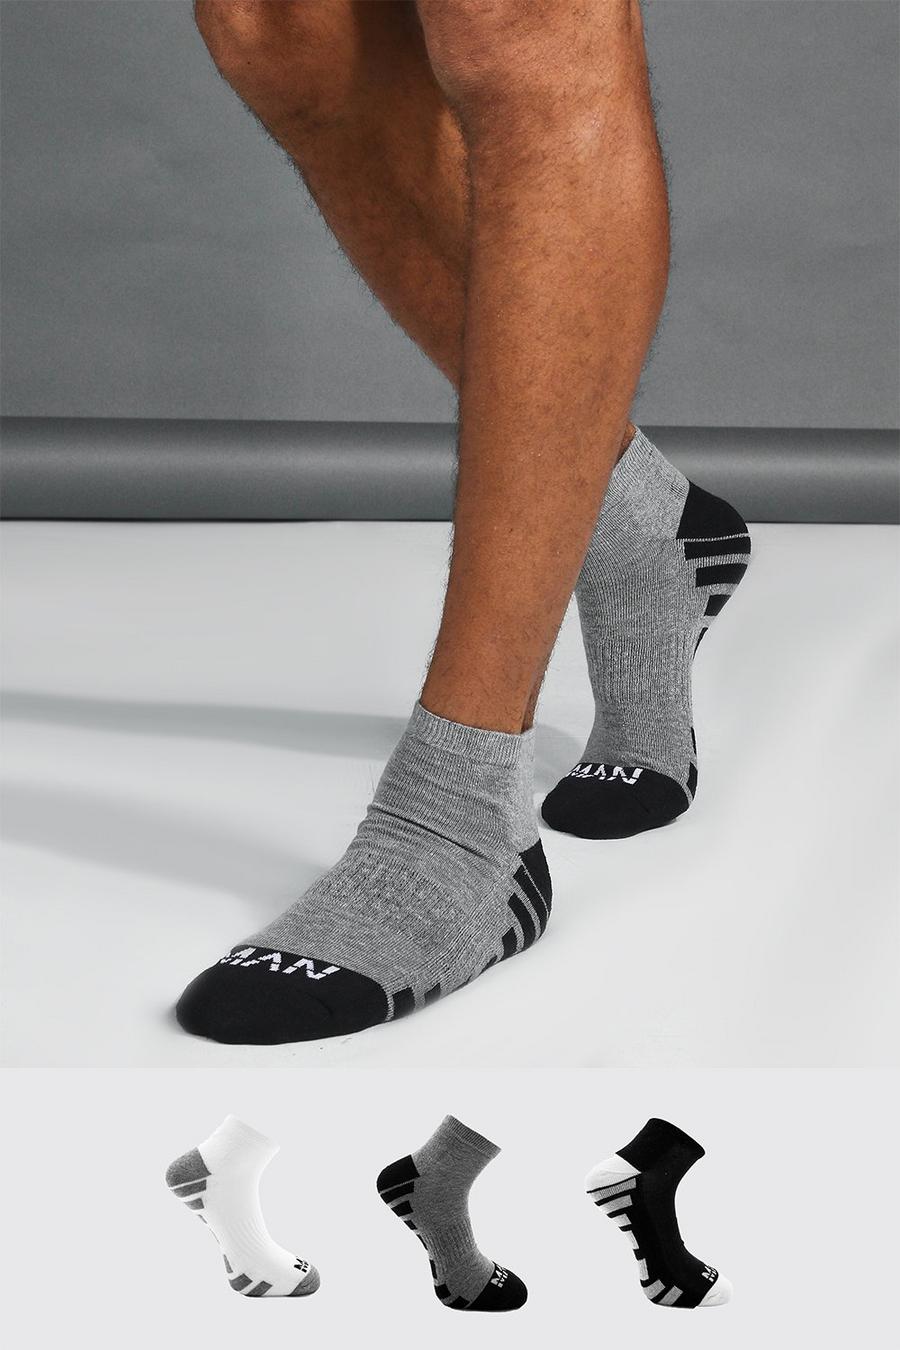 Calzini alla caviglia Man Dash Activewear - set di 3 paia, Multi